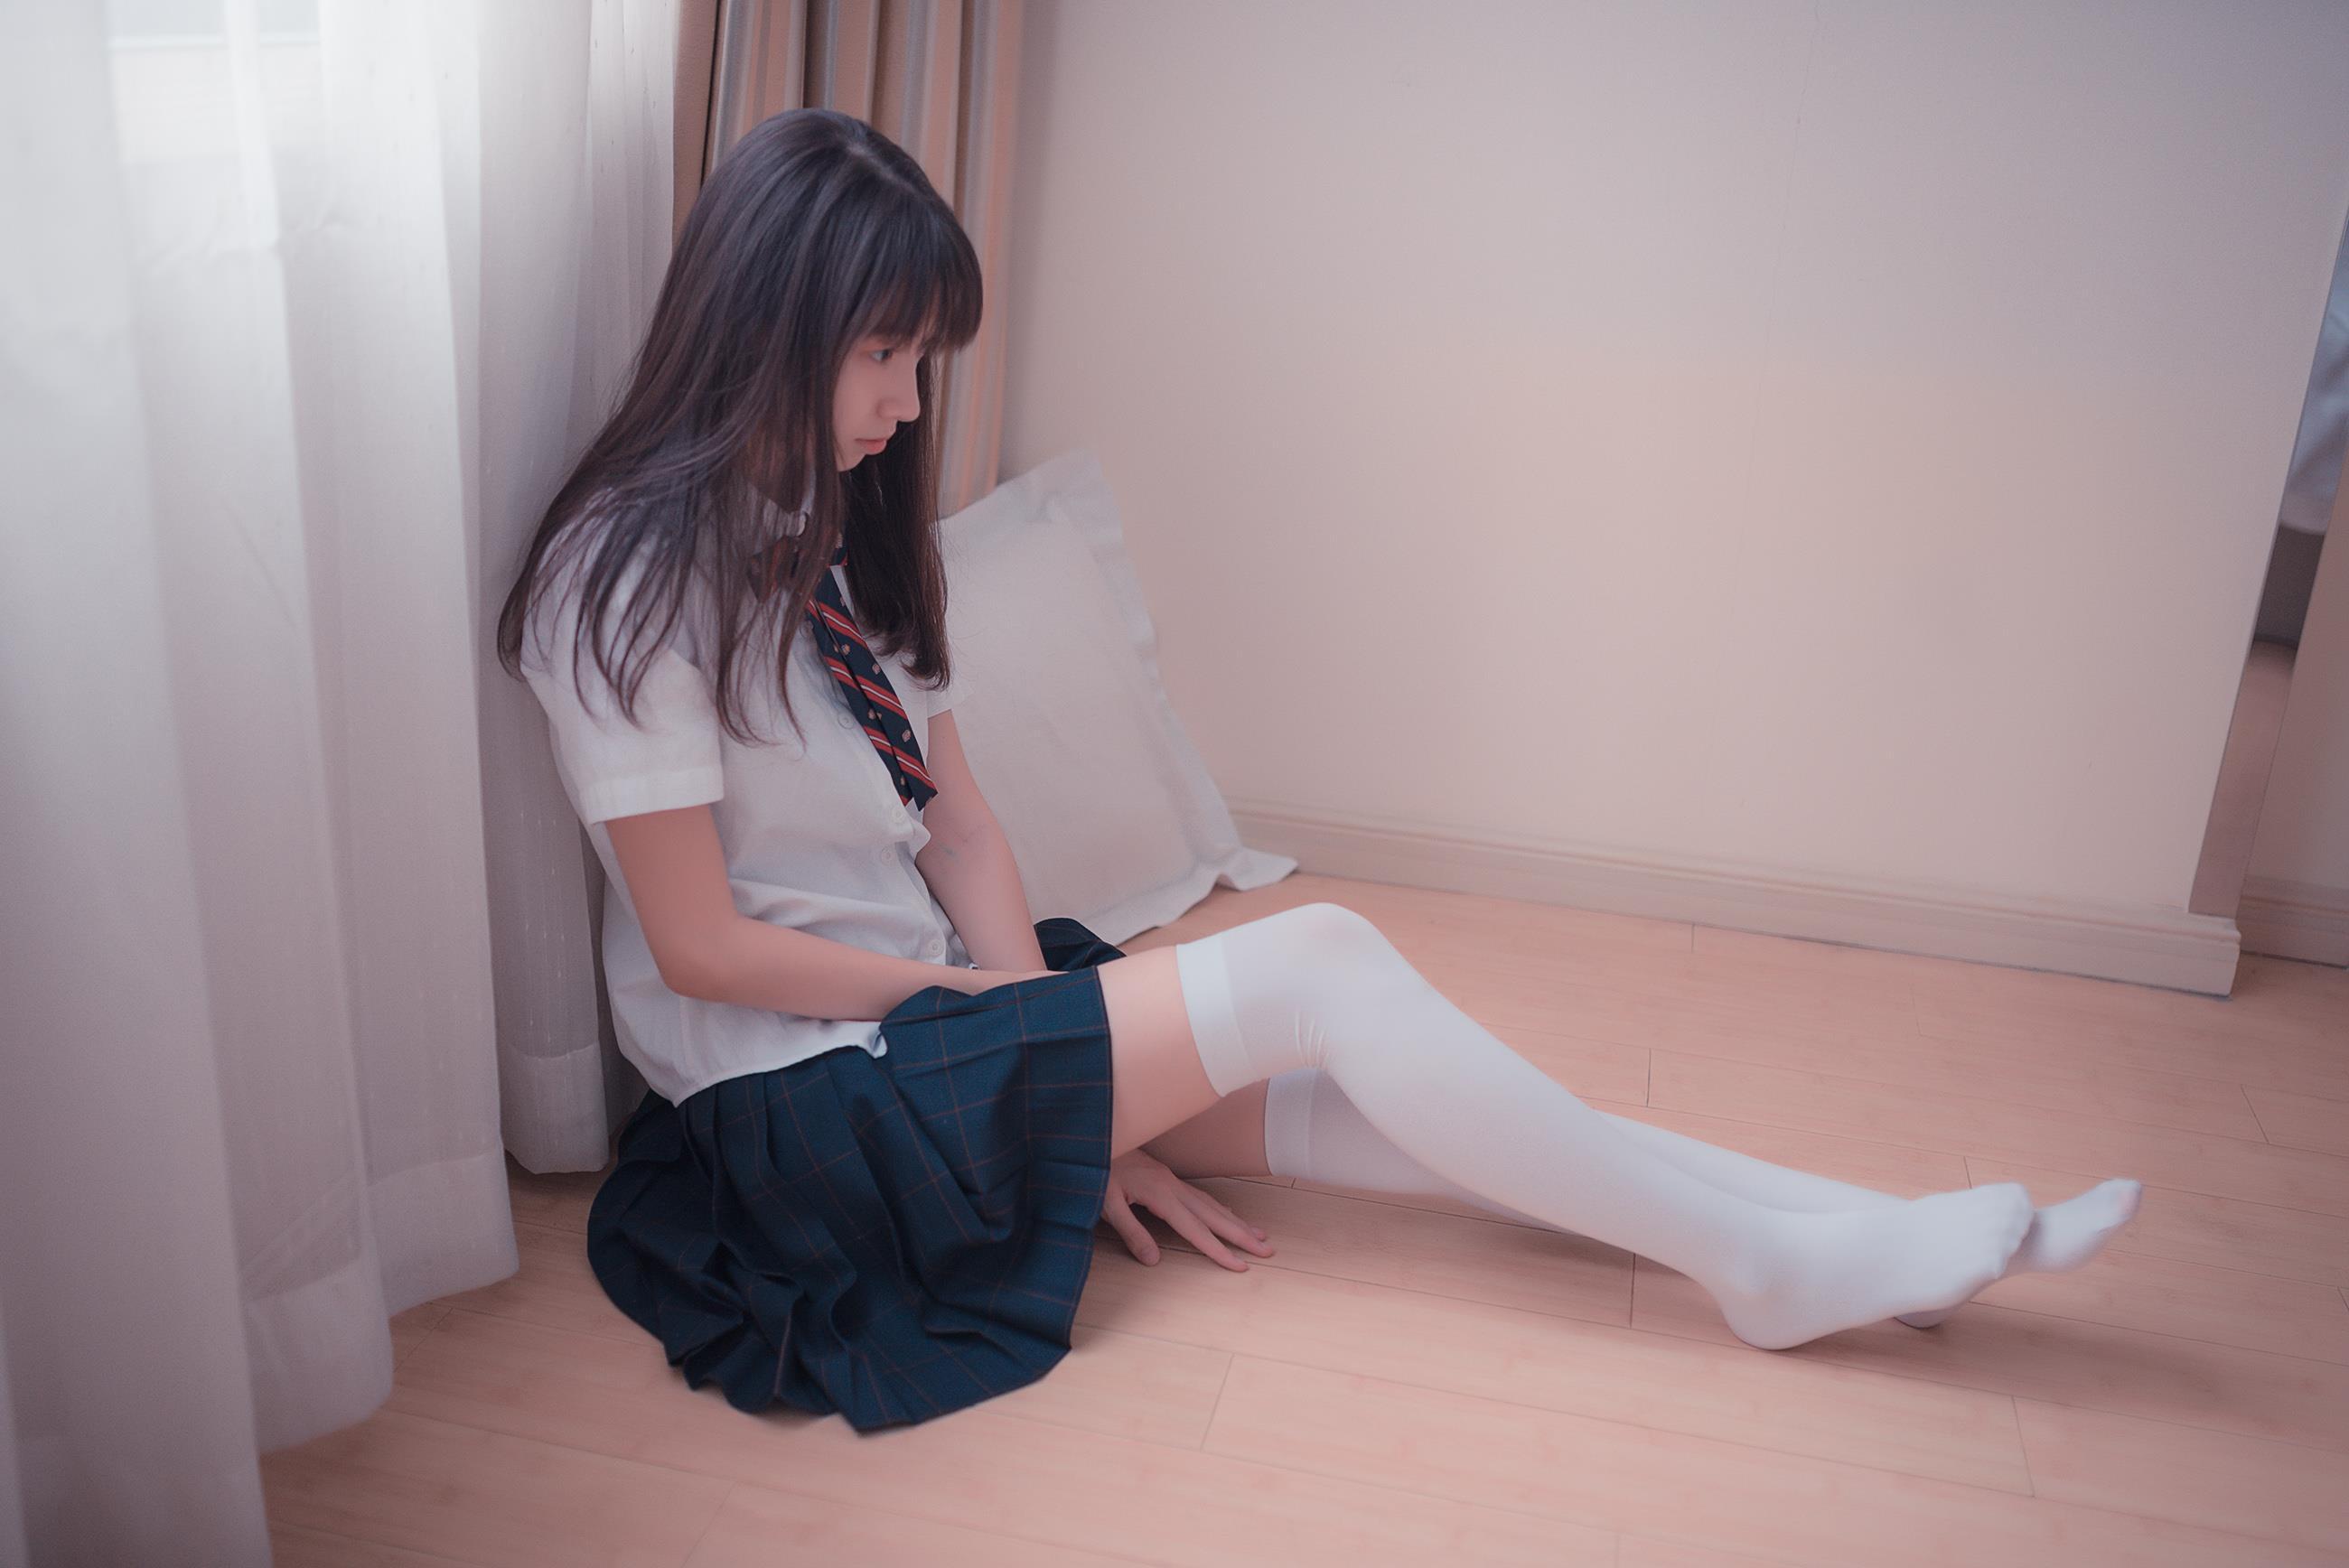 [风之领域]NO.004 清纯可爱小萝莉 高中女生制服与蓝色短裙加白色丝袜美腿室内性感私房写真集,